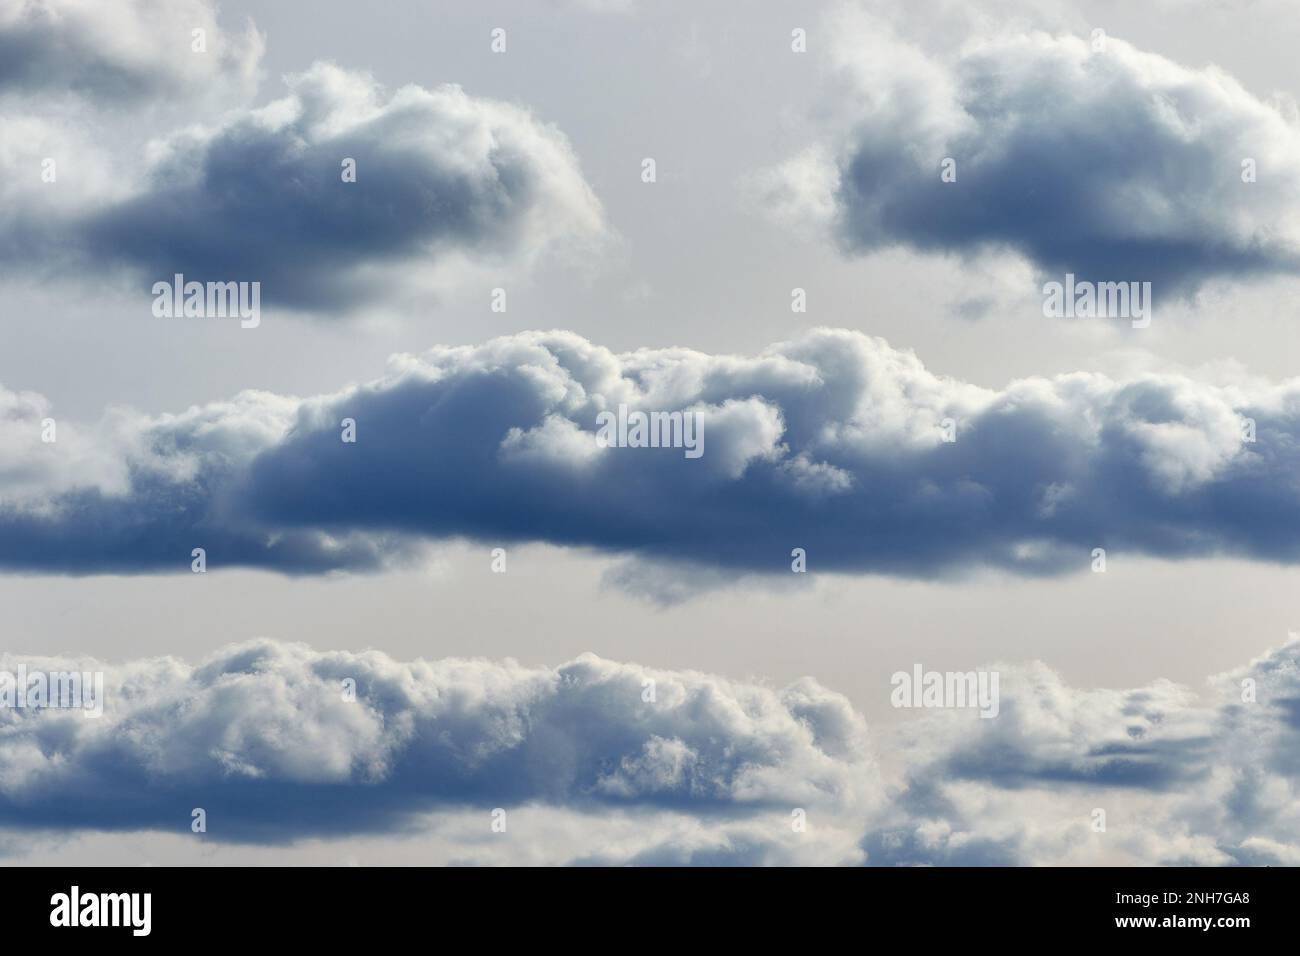 Stellen Sie sich natürliche Phänomene am Himmel vor Stockfoto